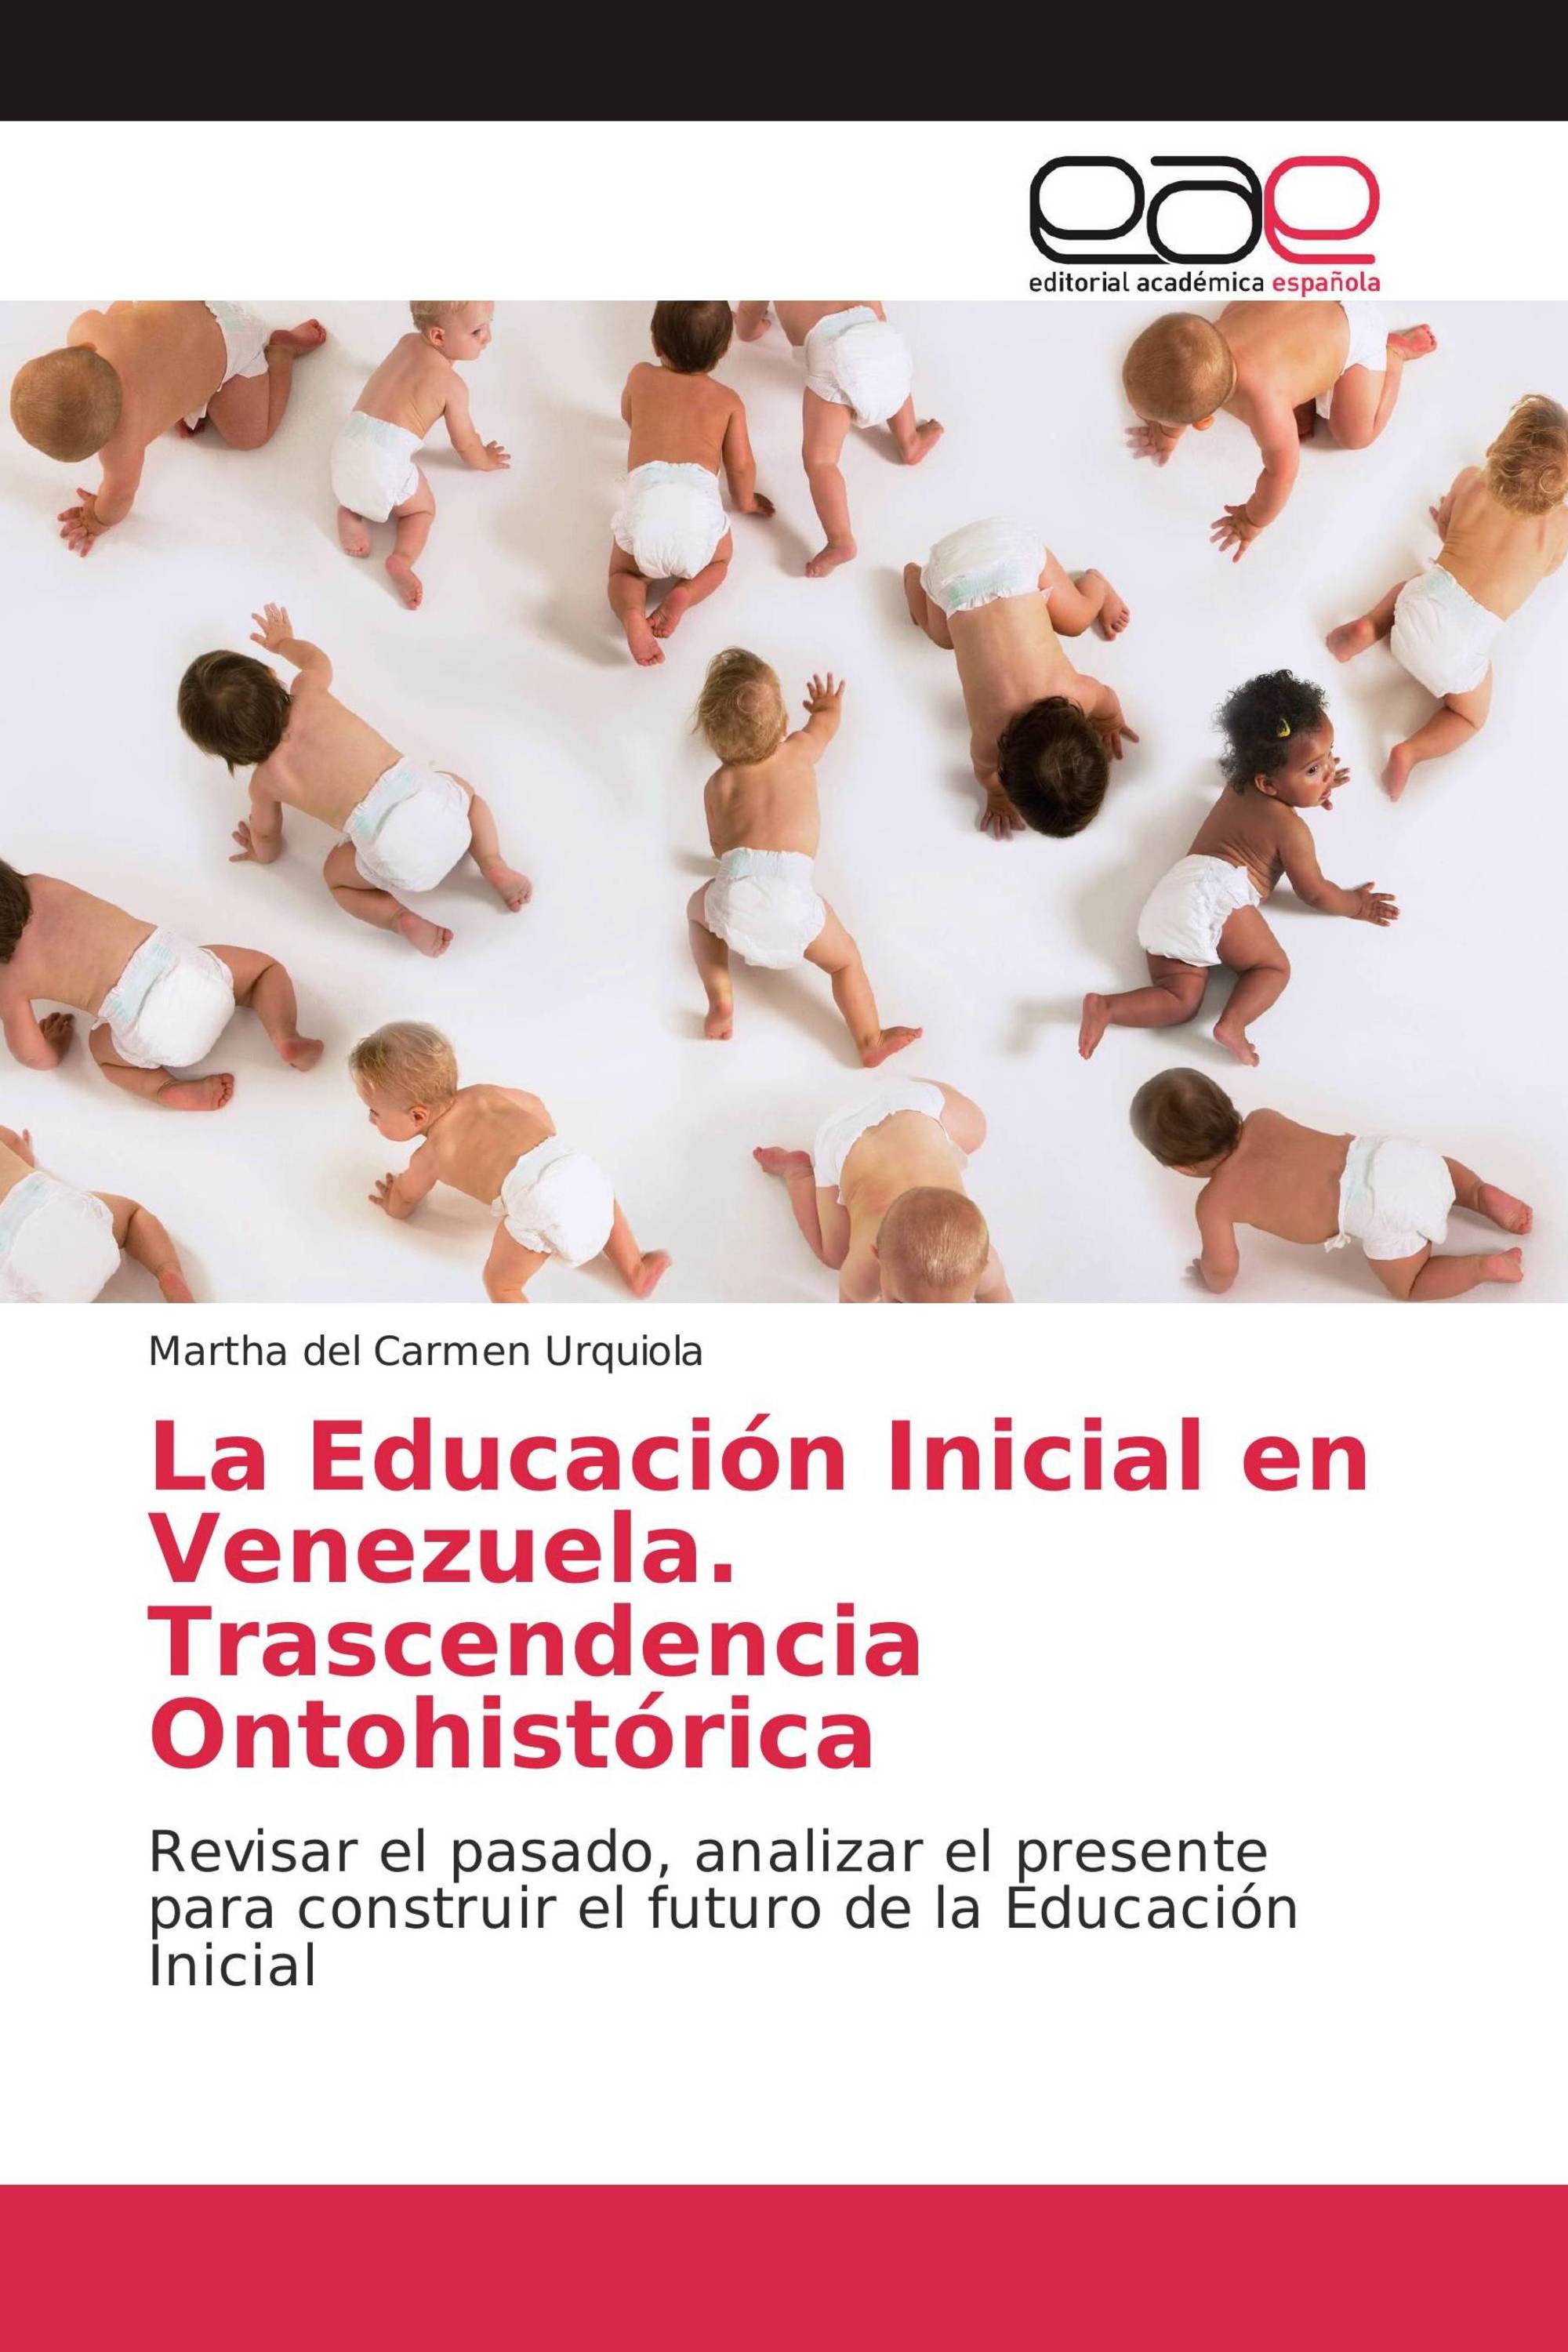 La Educación Inicial en Venezuela. Trascendencia Ontohistórica